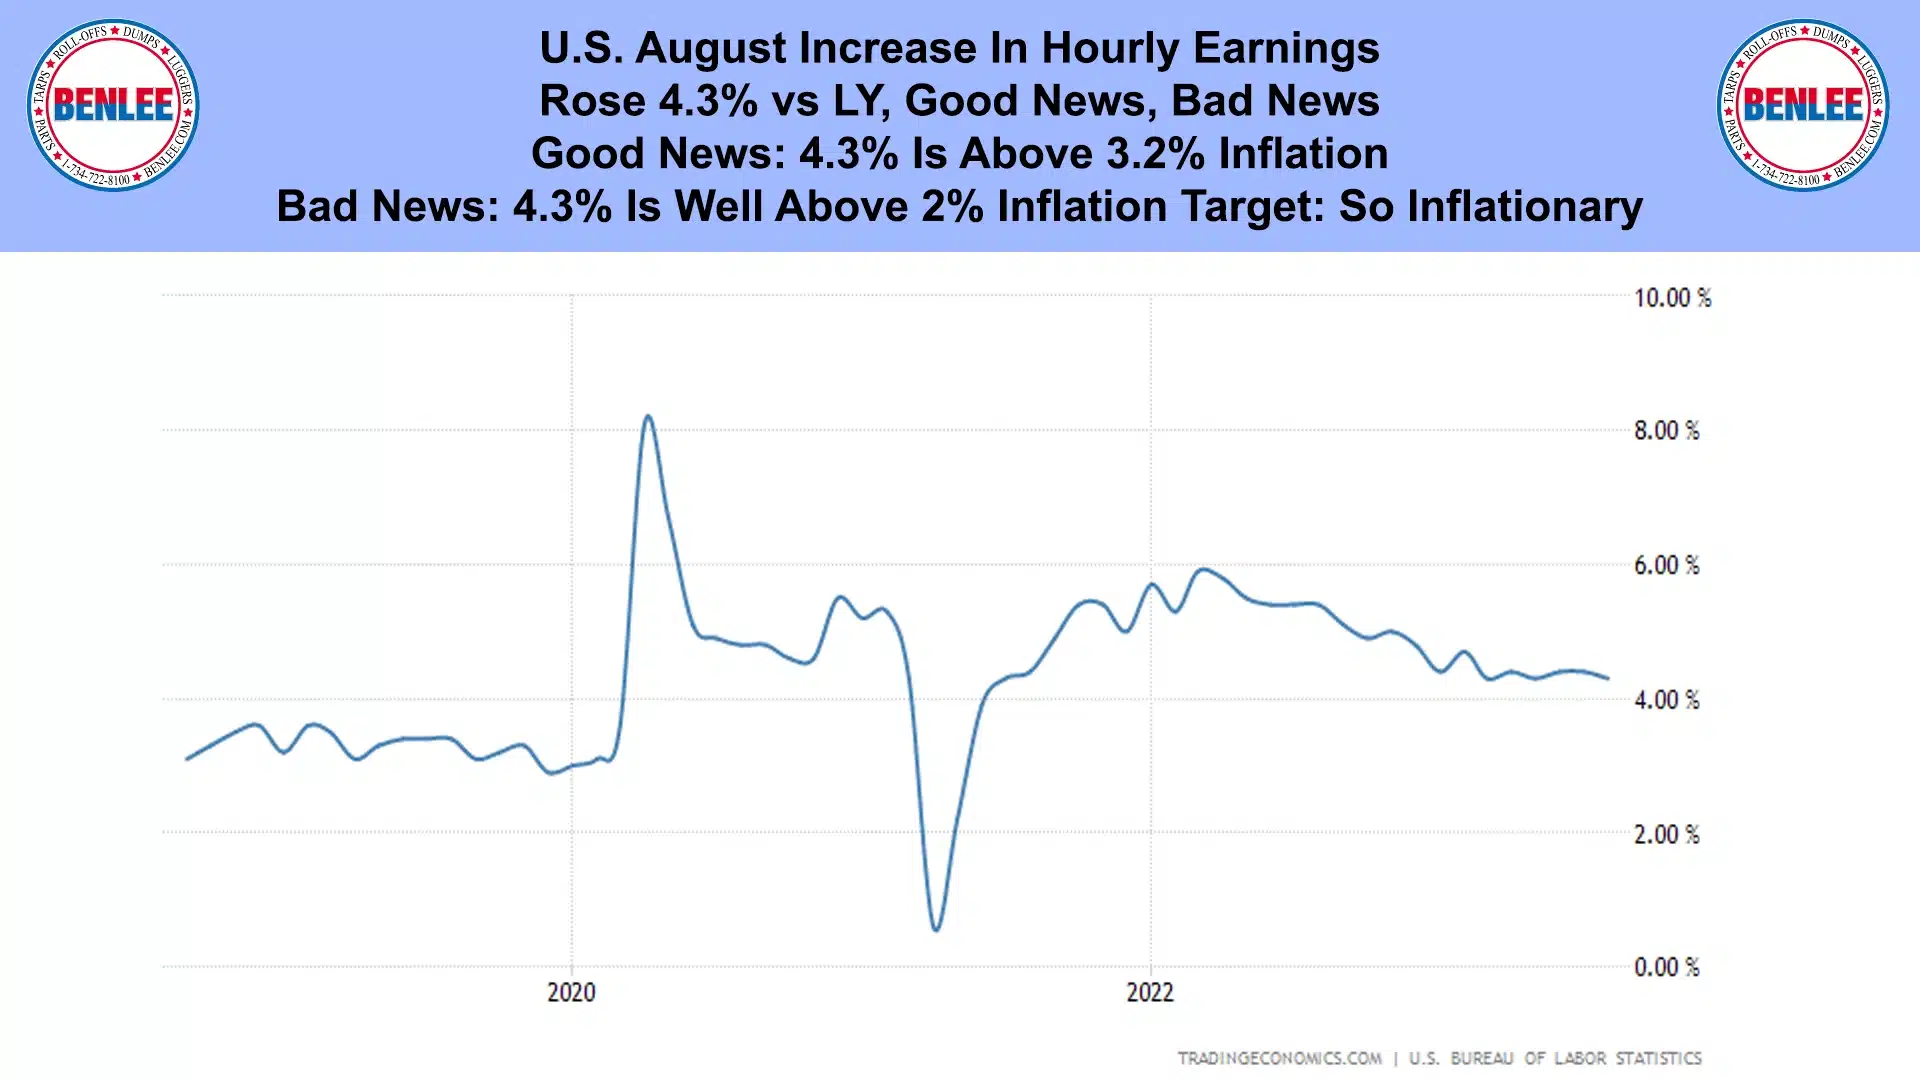 U.S. August Increase In Hourly Earnings